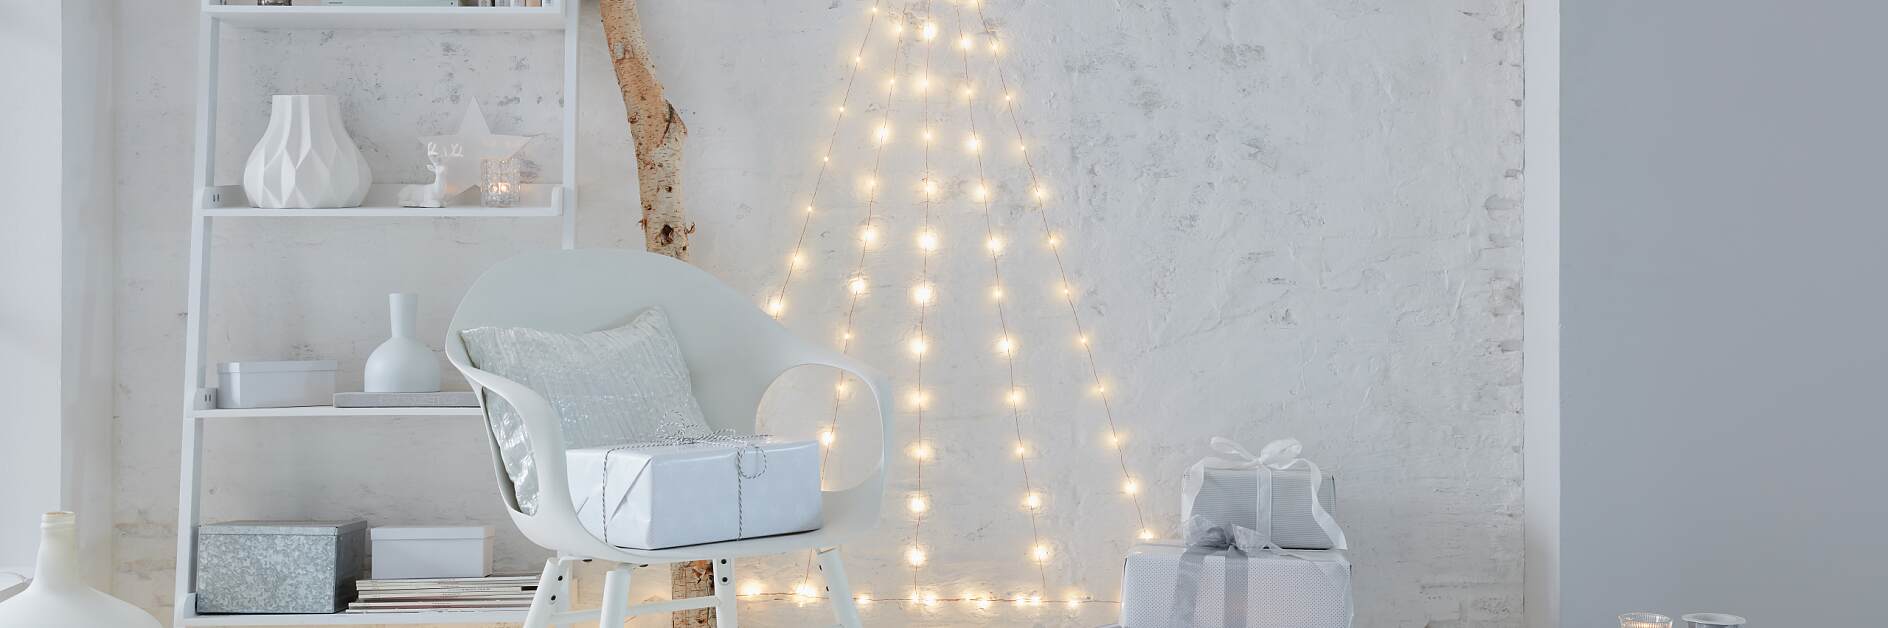 Lav dit egen LED-juletræ til at hænge på væggen!